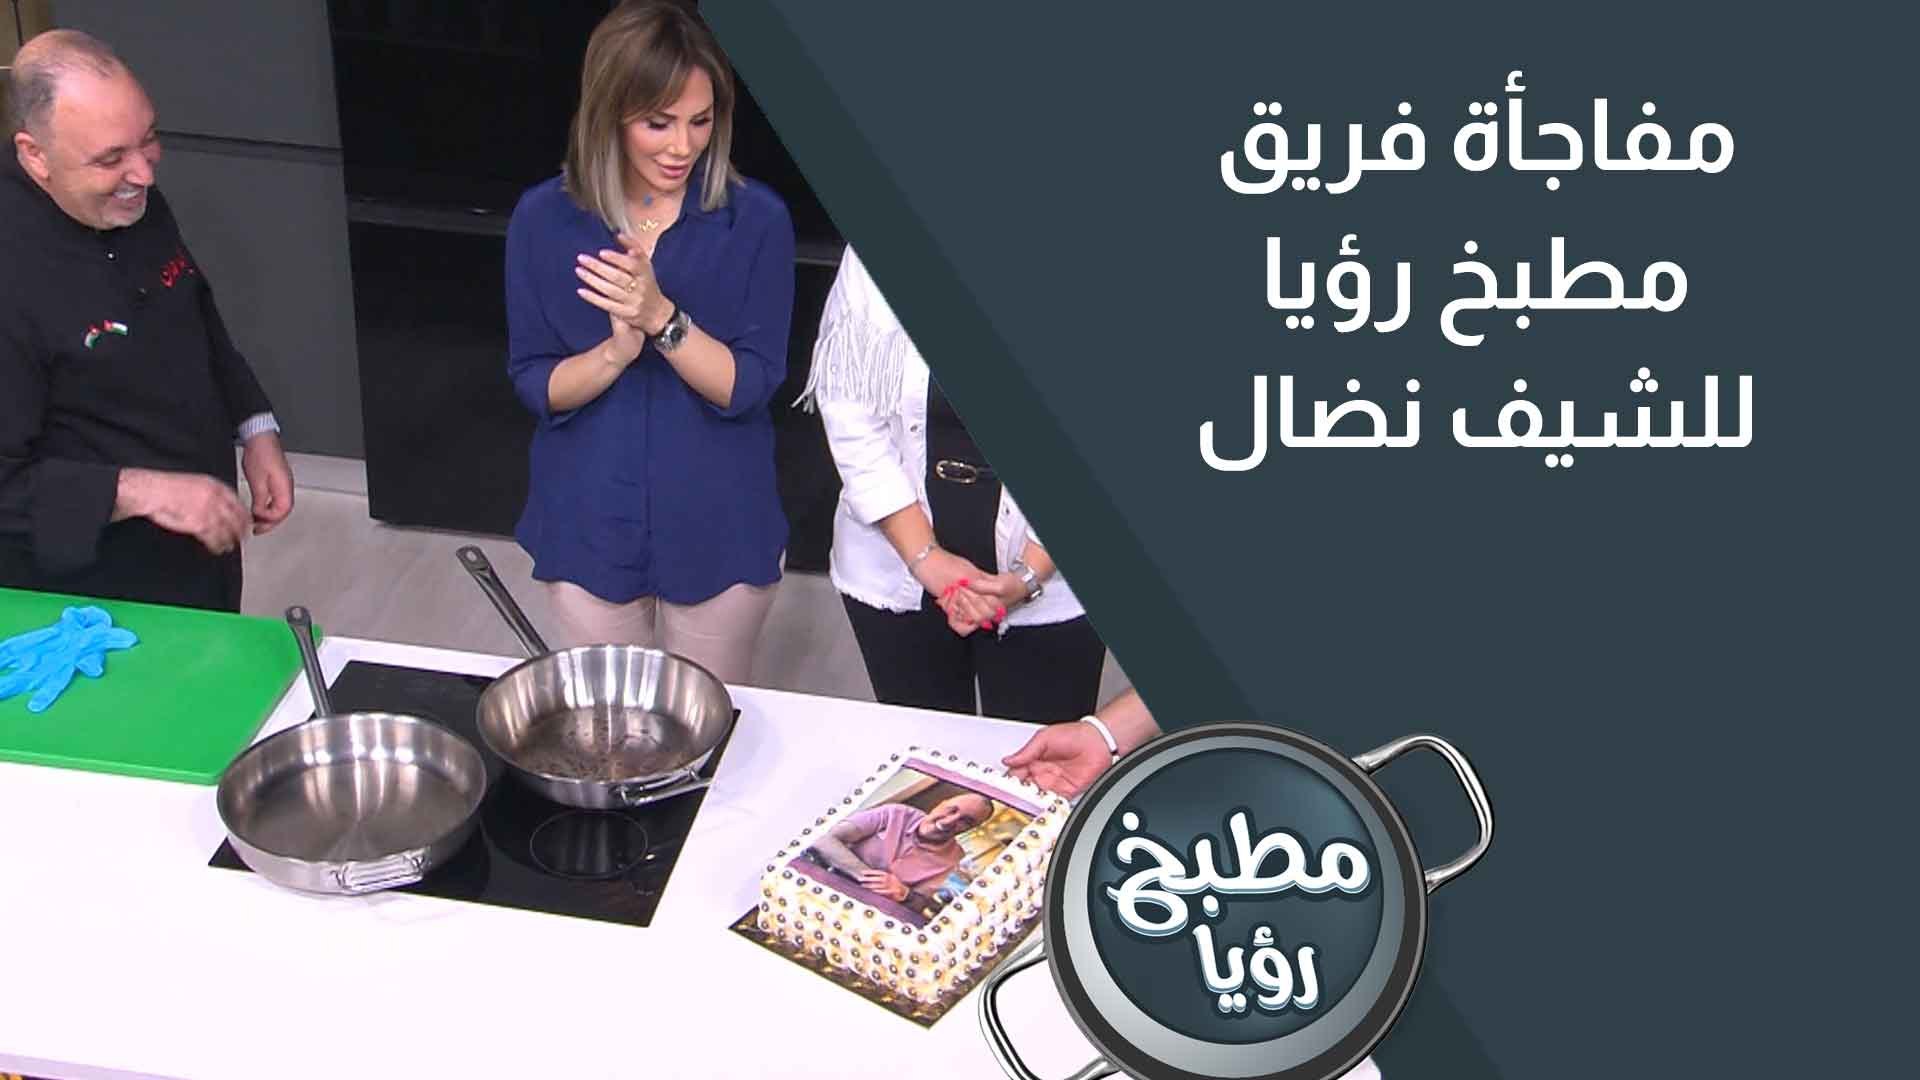 مفاجأة فريق مطبخ رؤيا للشيف نضال بمناسبة يوم ميلاده - فيديو Dailymotion